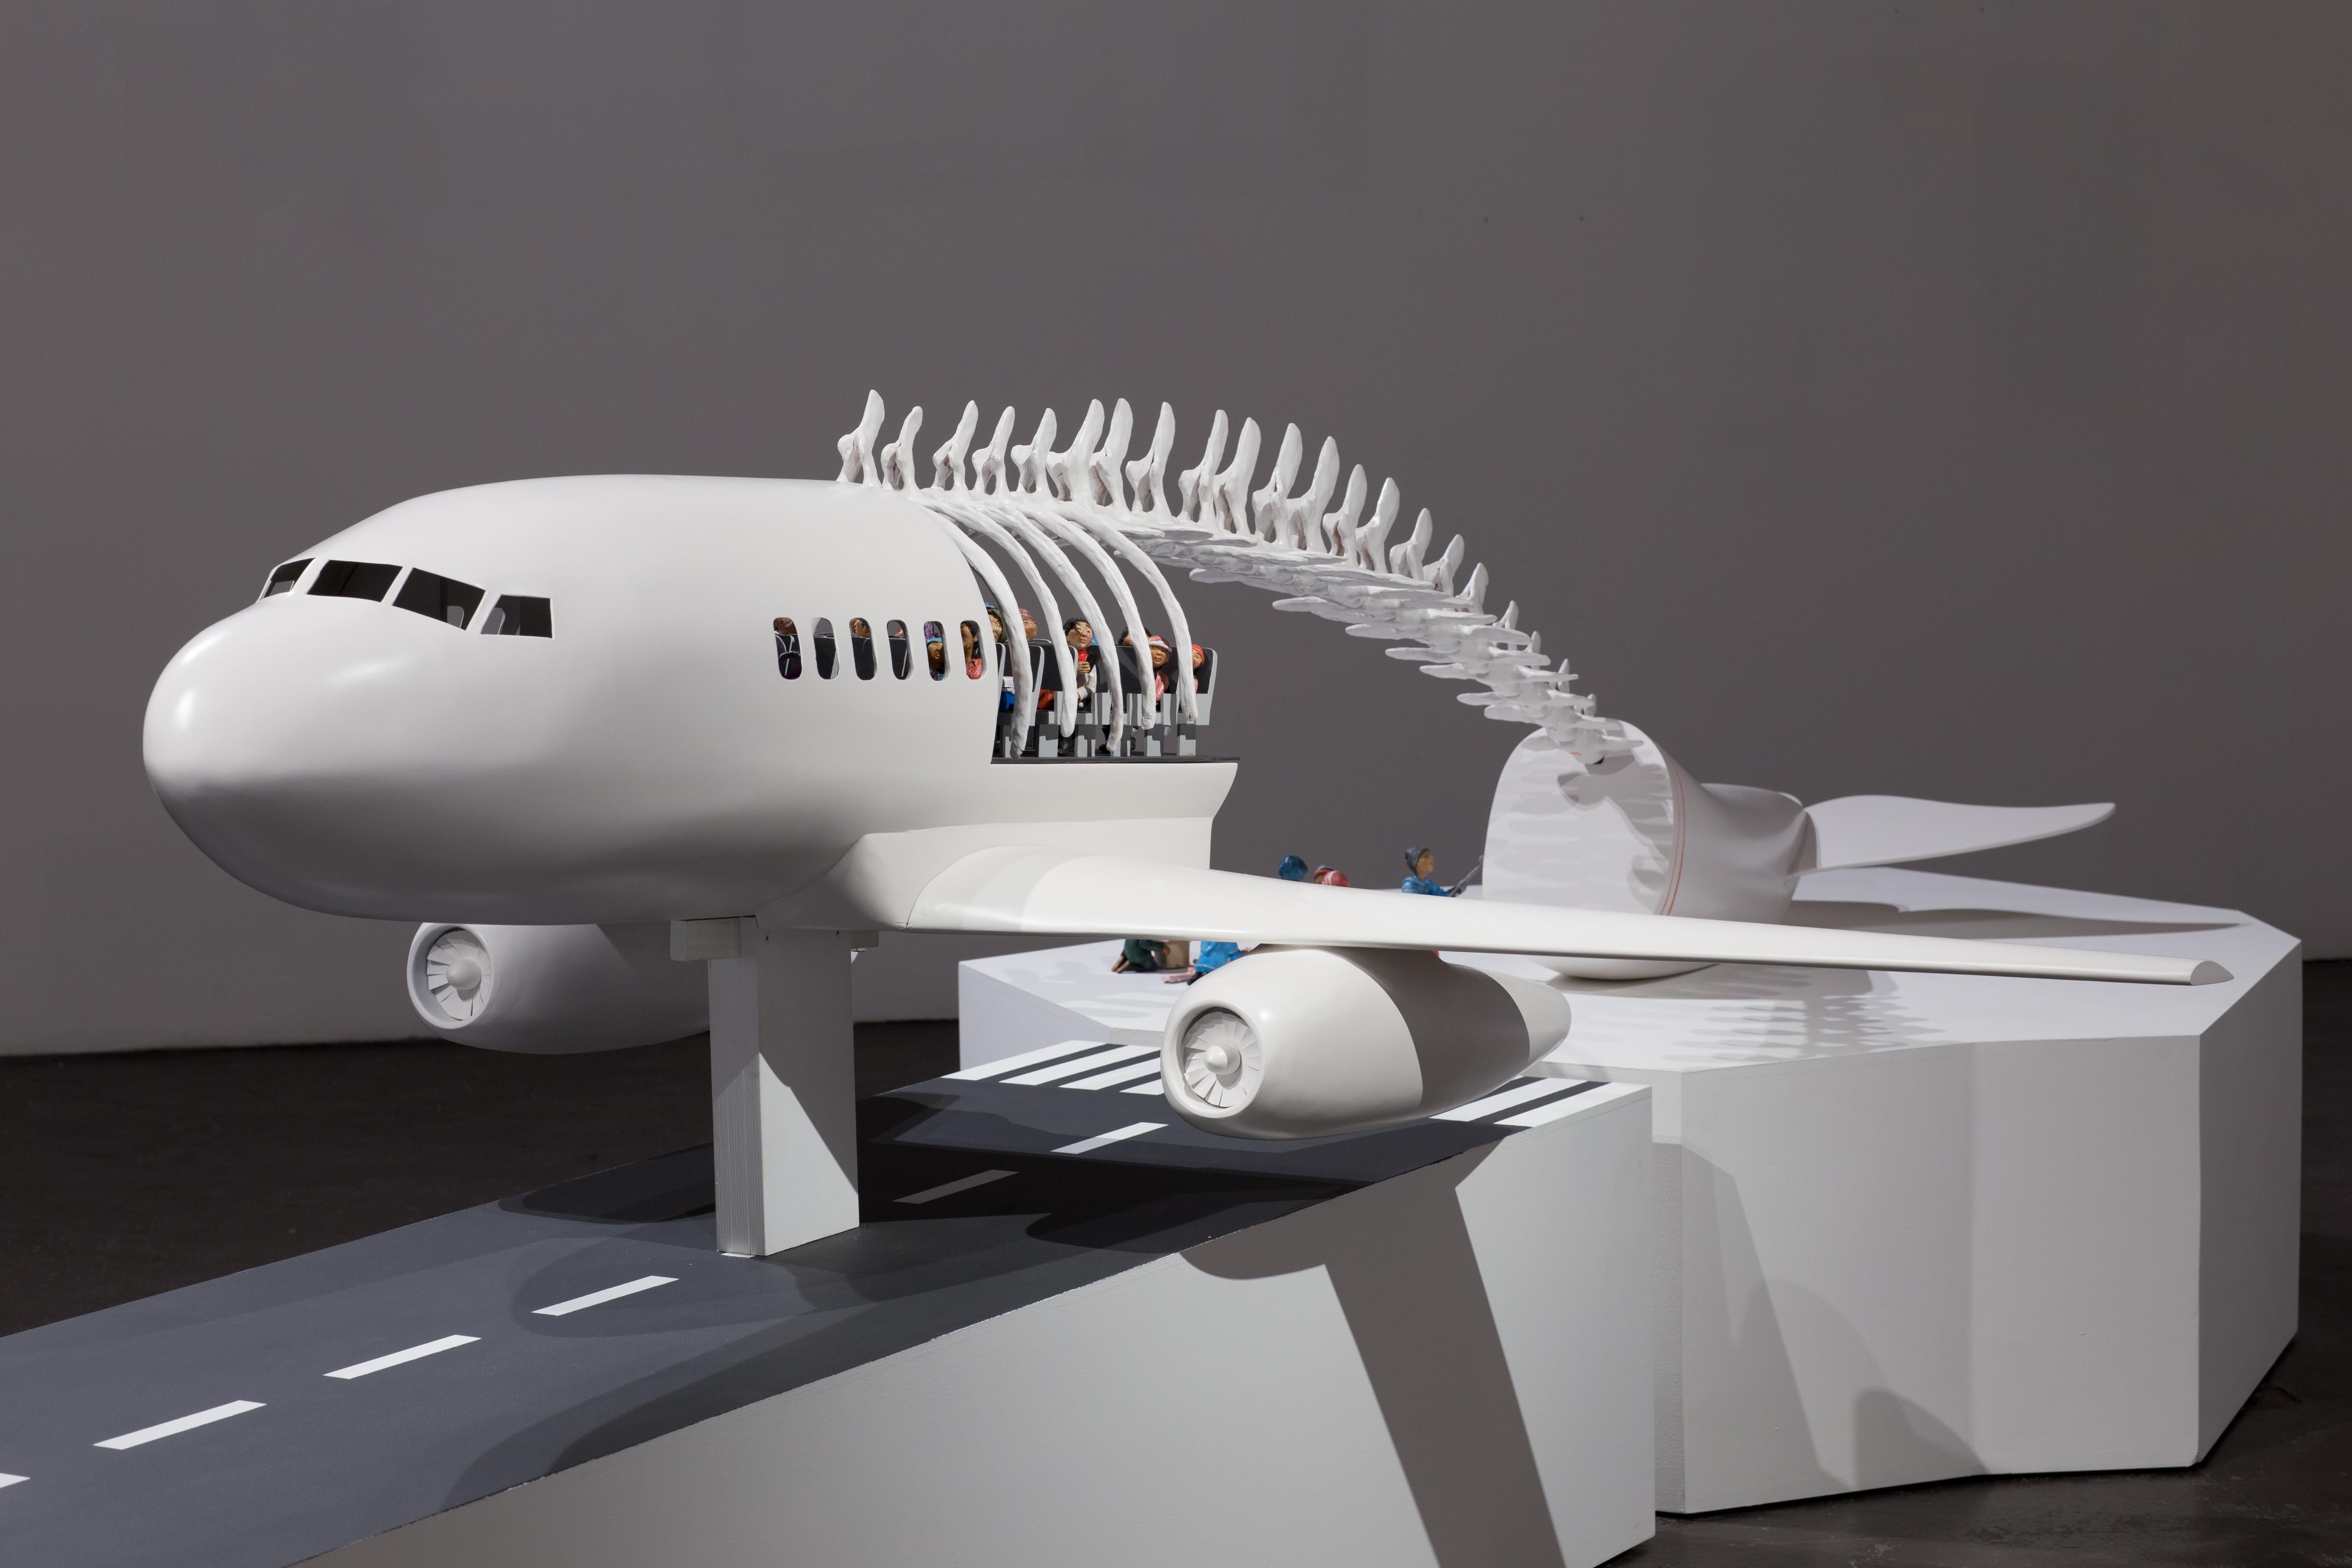 Avion-baleine - Sculpture by Karine Giboulo